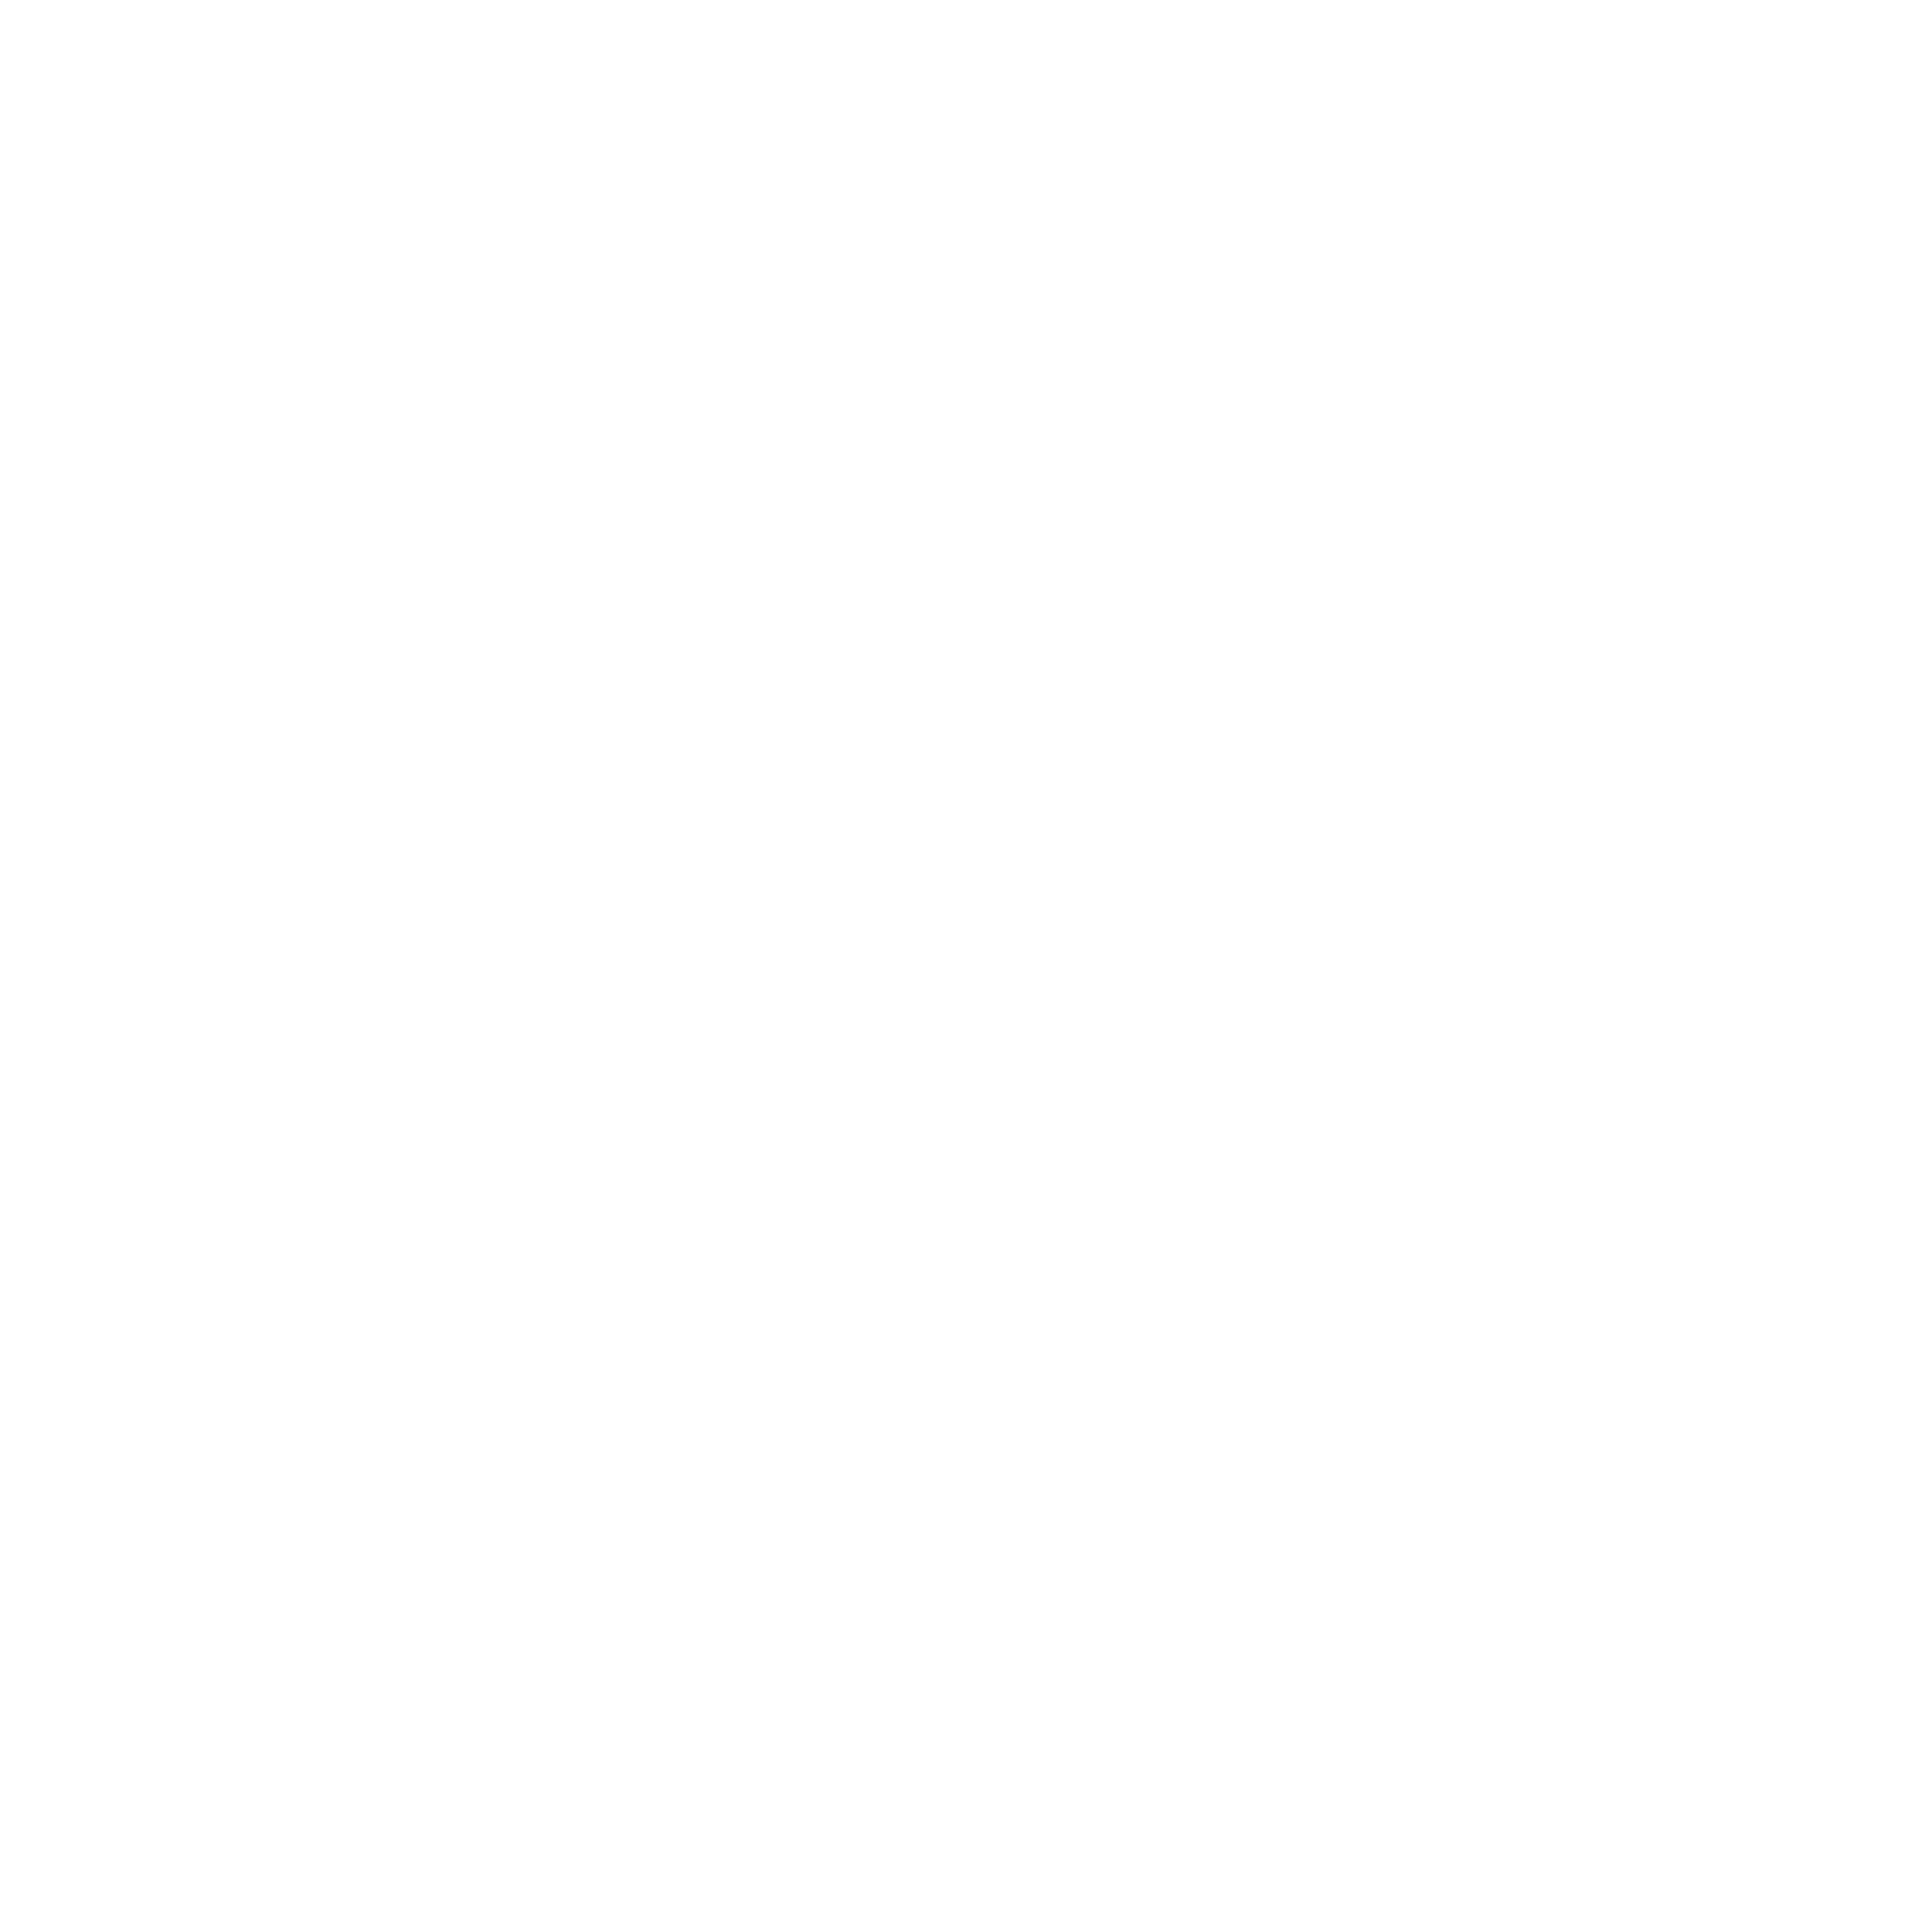 Wishy Washy